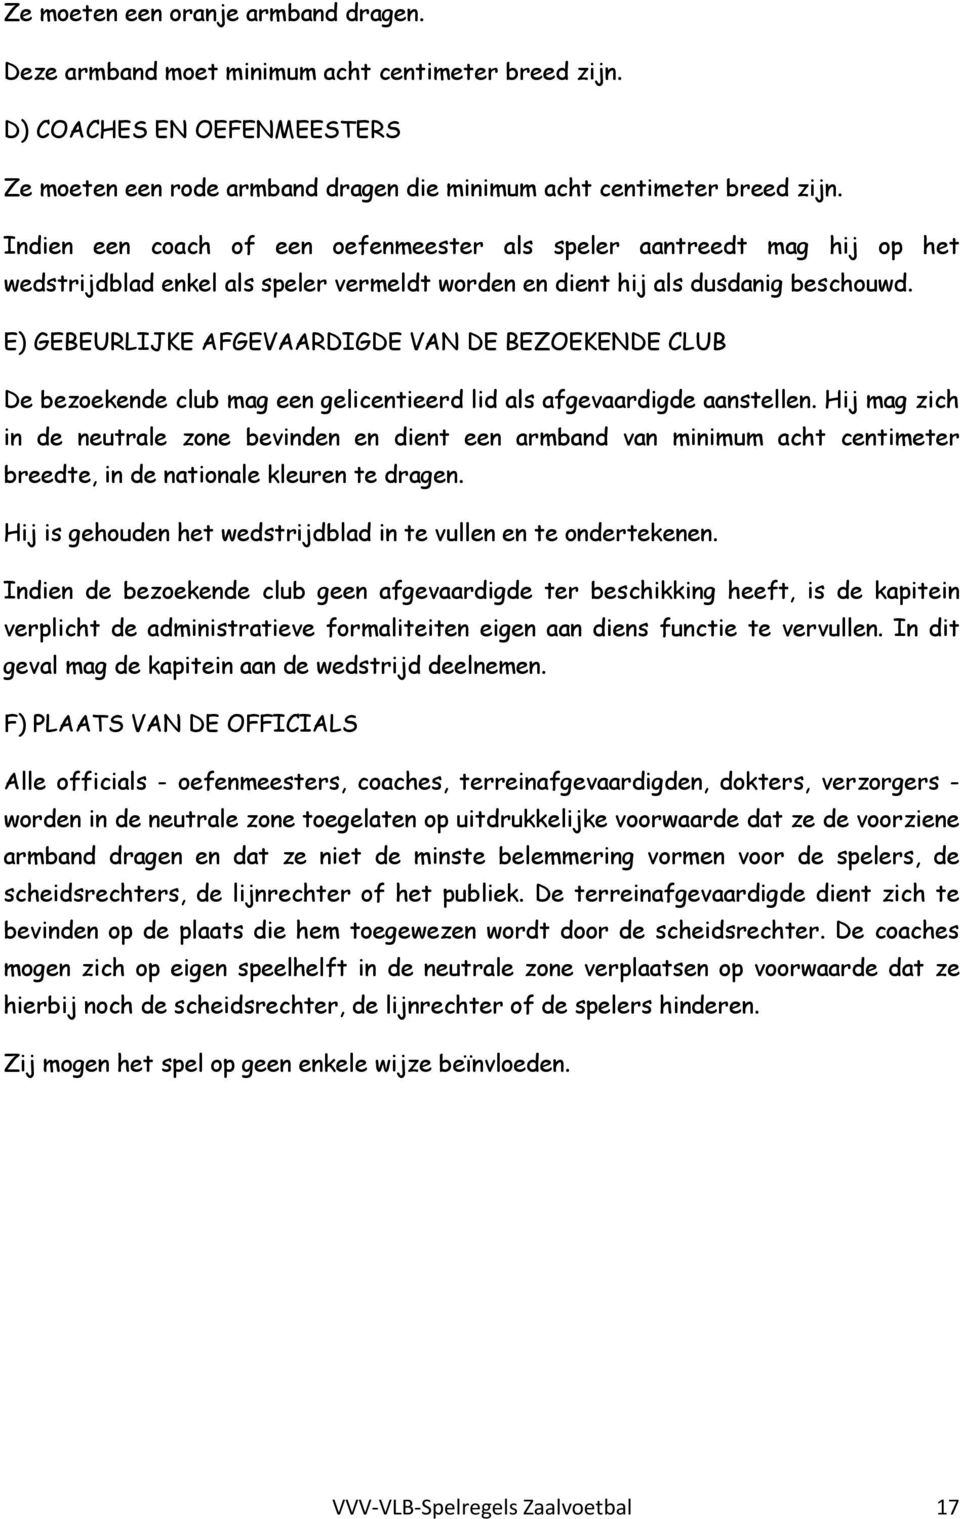 E) GEBEURLIJKE AFGEVAARDIGDE VAN DE BEZOEKENDE CLUB De bezoekende club mag een gelicentieerd lid als afgevaardigde aanstellen.